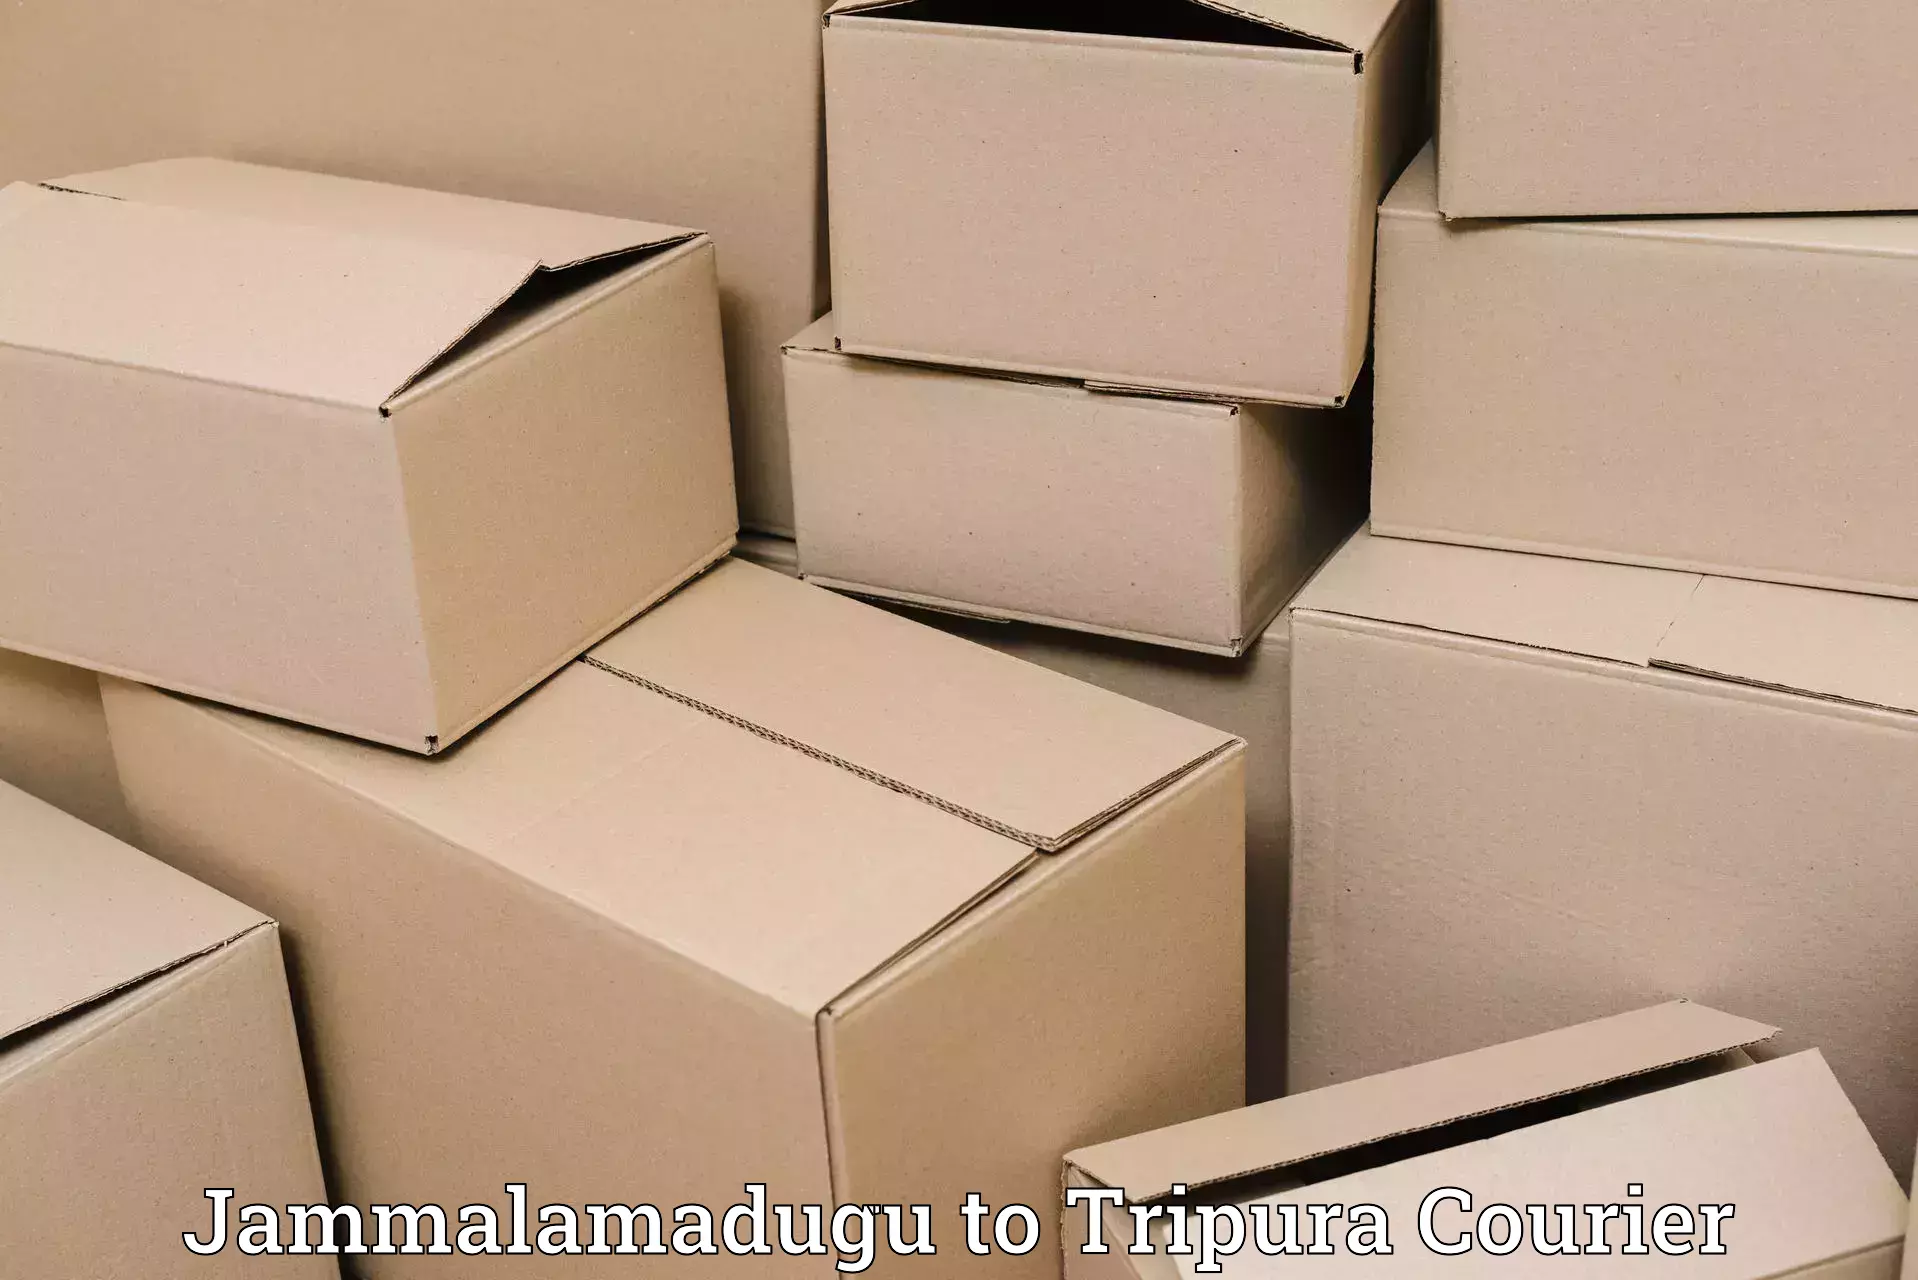 Express package handling Jammalamadugu to Tripura